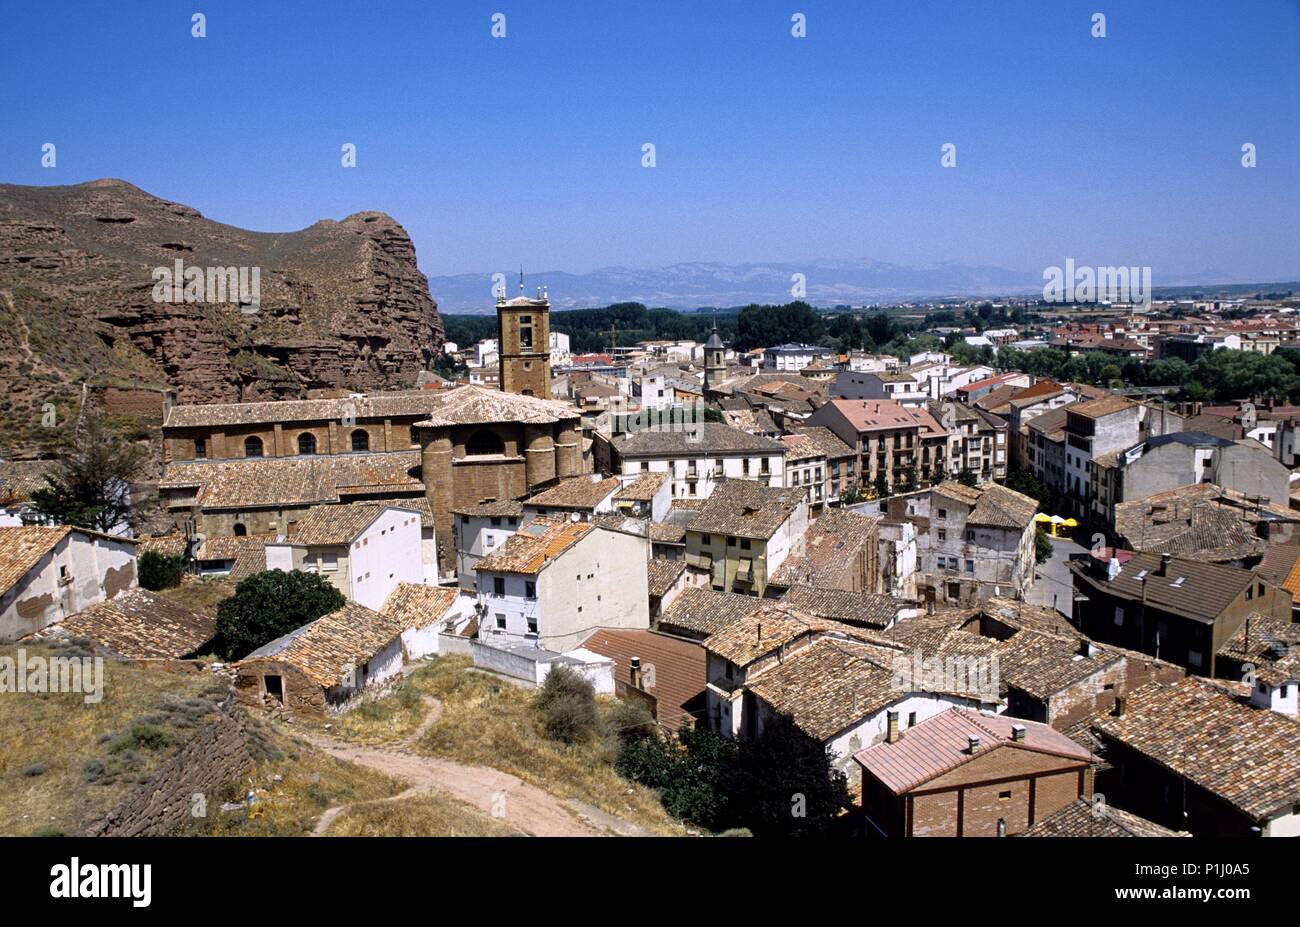 Nájera; vista del pueblo y monasterio de Santa María la Real (Camino de Santiago). Stock Photo